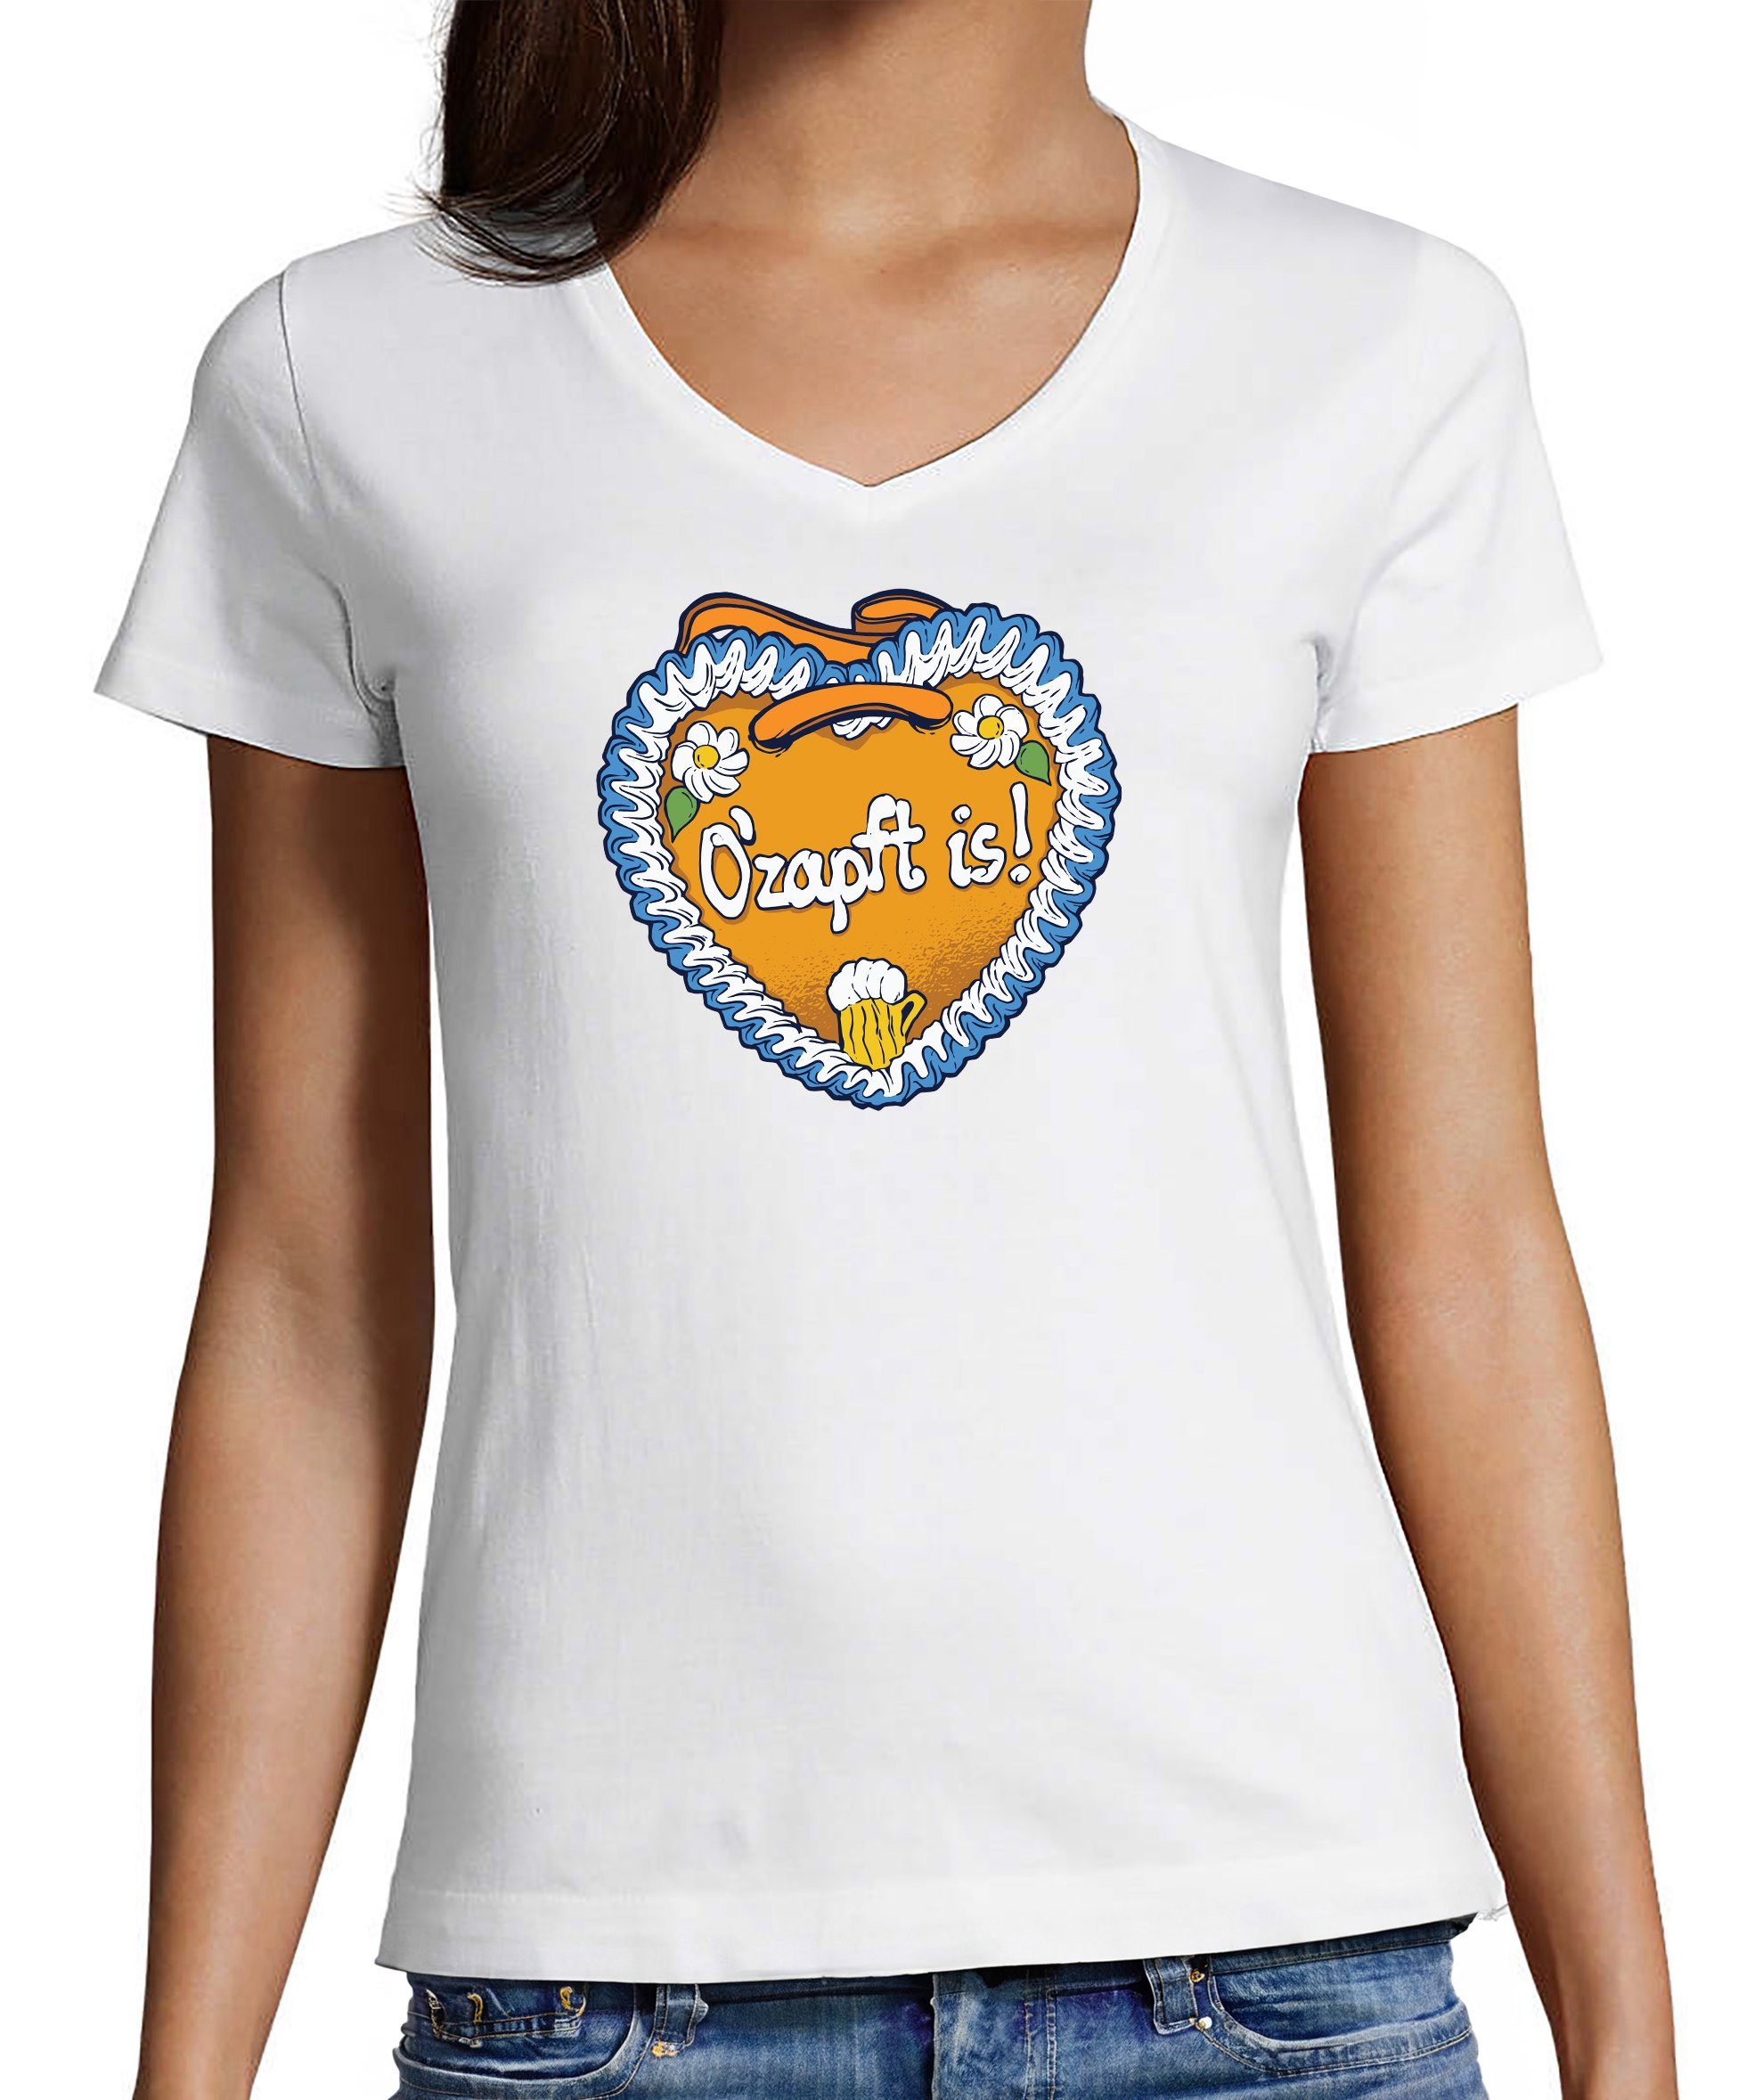 MyDesign24 T-Shirt Damen Oktoberfest T-Shirt - Lebkuchen Herz mit O´Zapft is V-Ausschnitt Print Shirt Slim Fit, i313 weiss